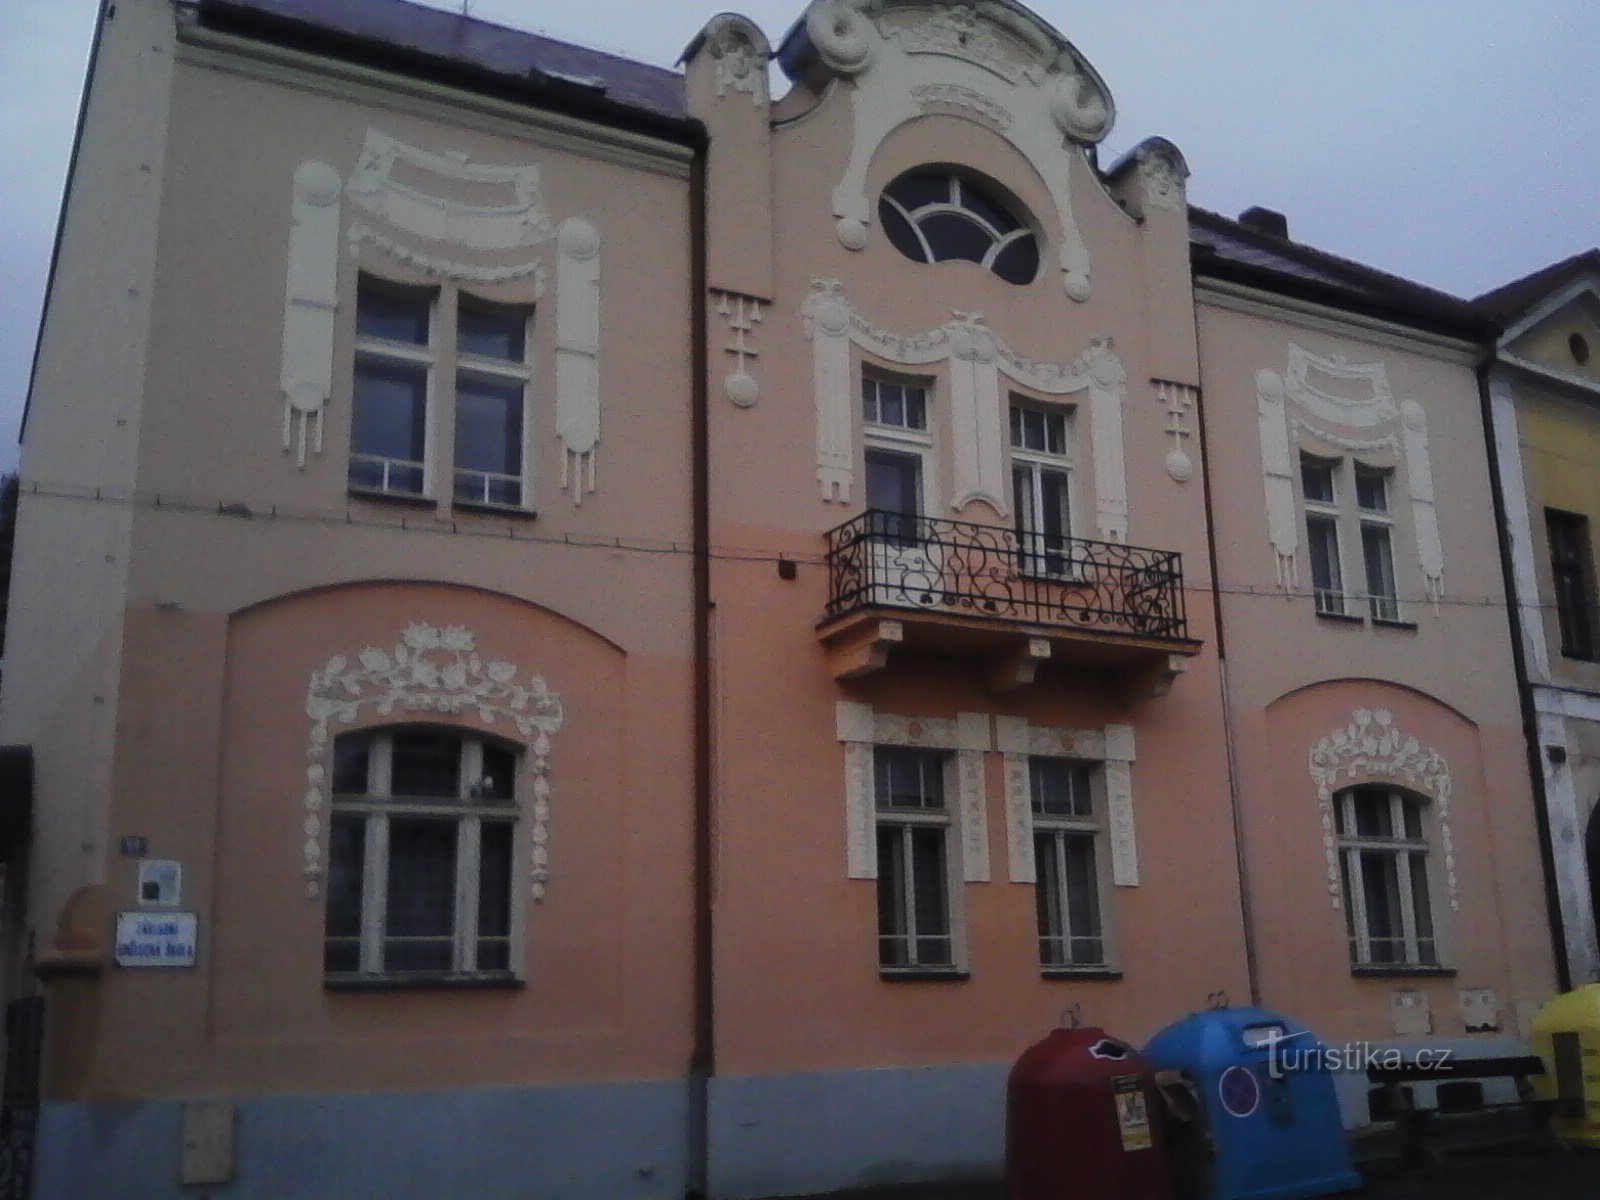 1. Clădirea LŠU din Sedlec.